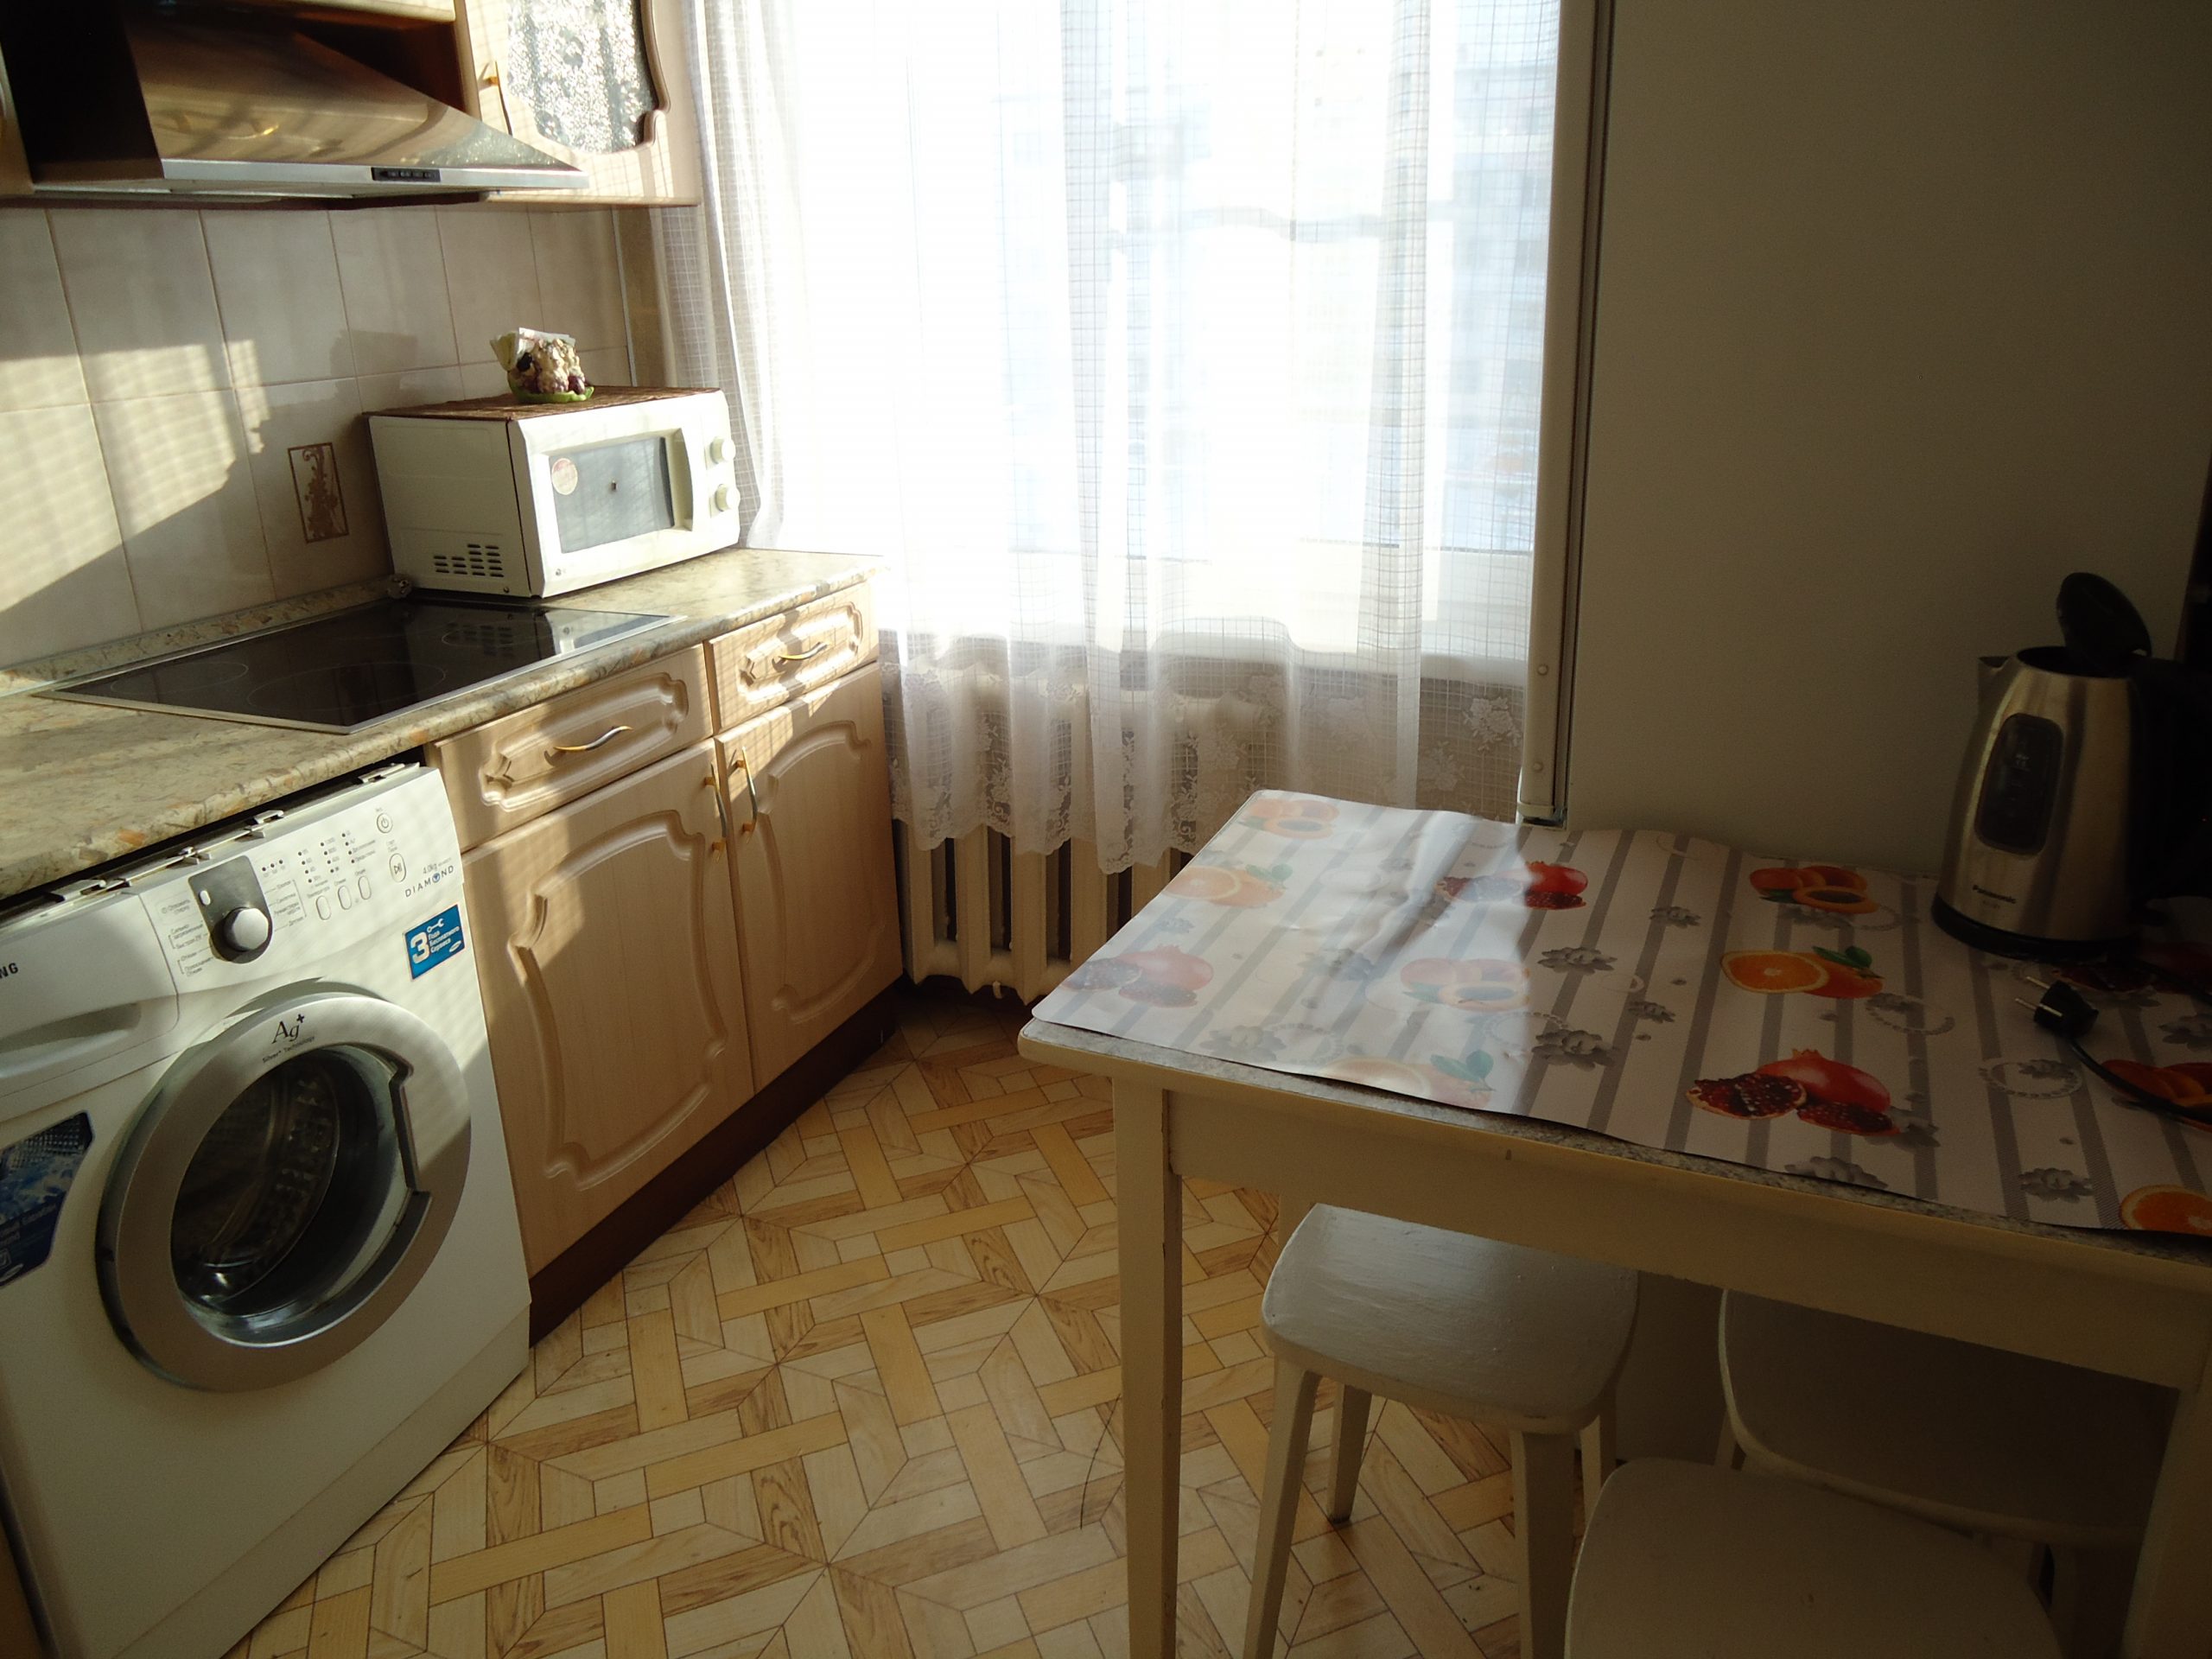 Однокомнатная квартира на ул. Алтайская 24 (30кв.м) до 2 гостей